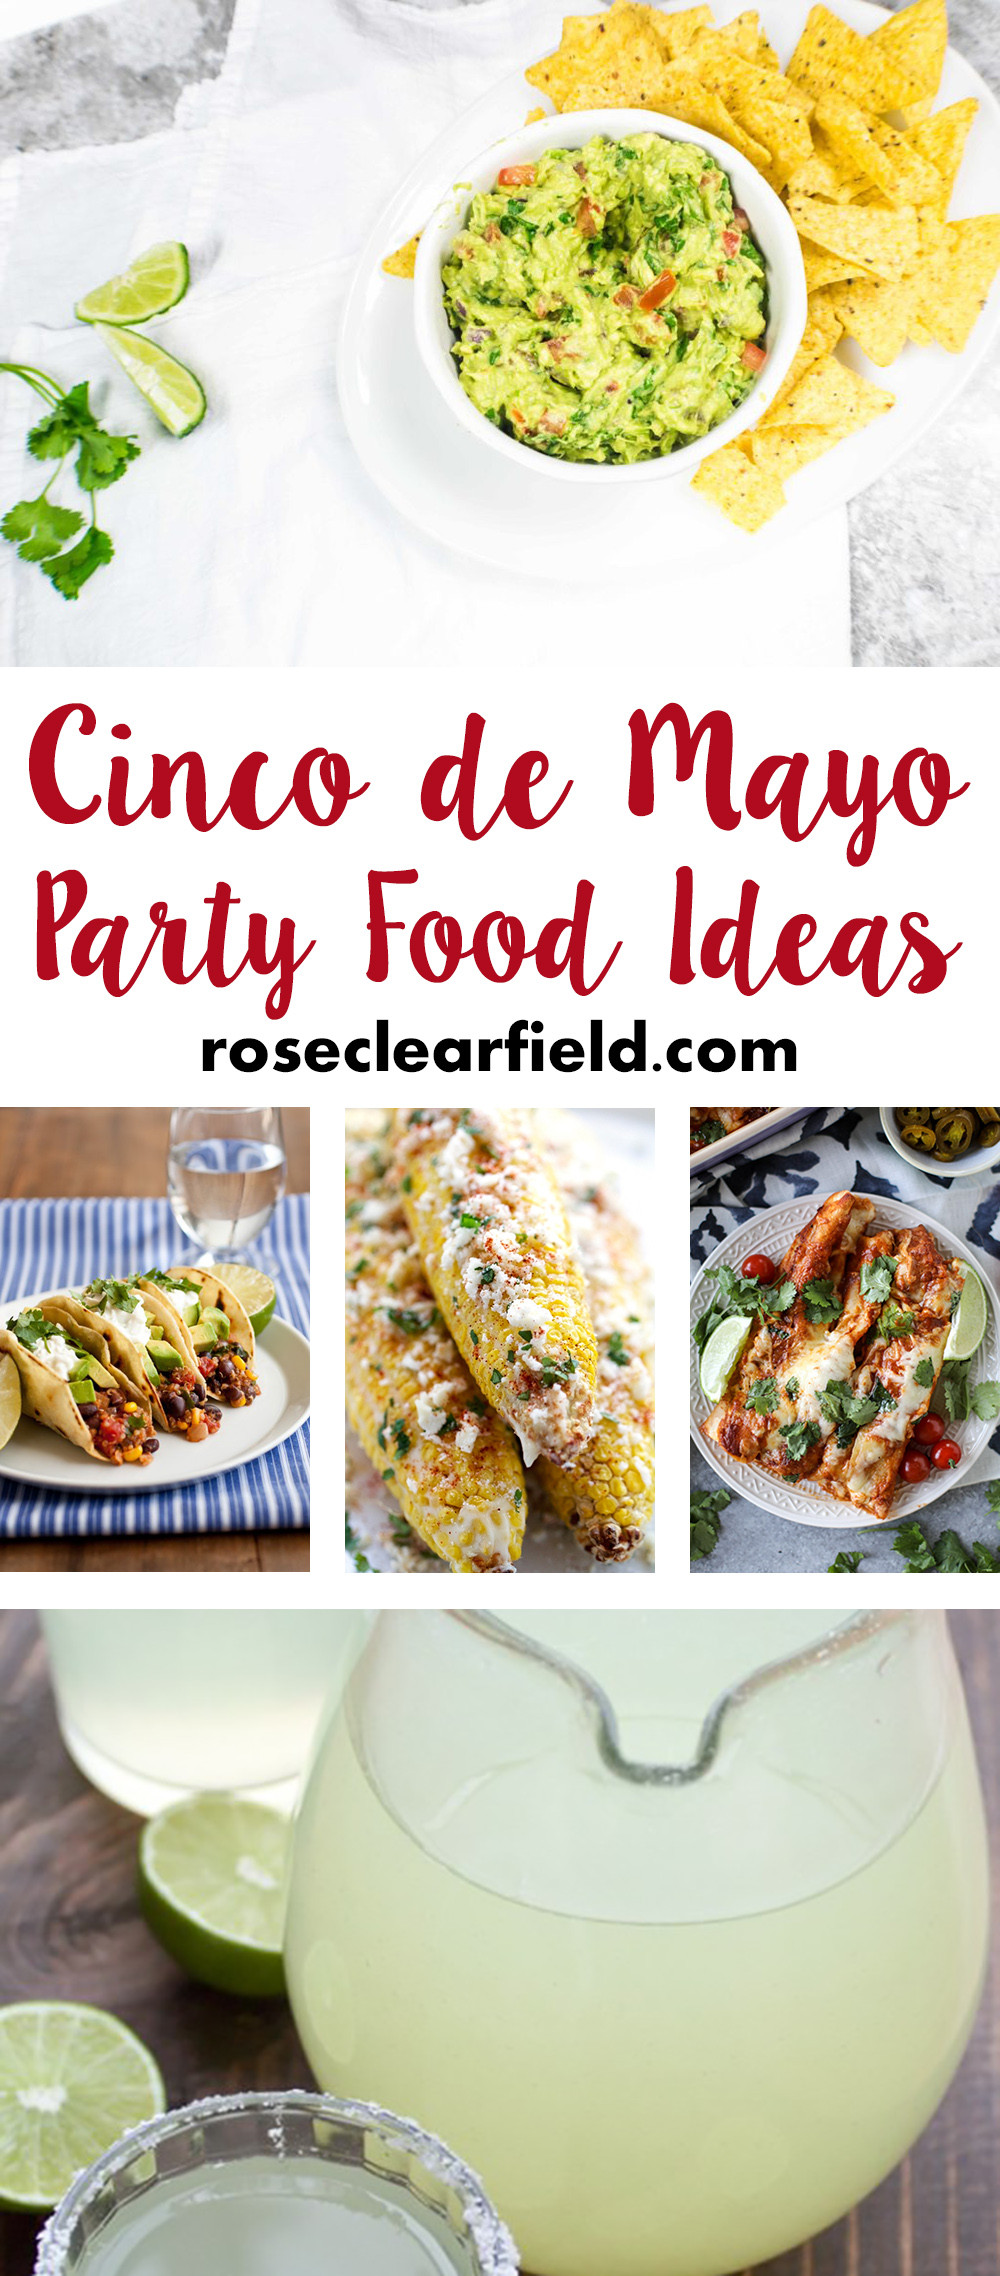 Cinco De Mayo Foods Ideas
 Cinco de Mayo Party Food Ideas • Rose Clearfield